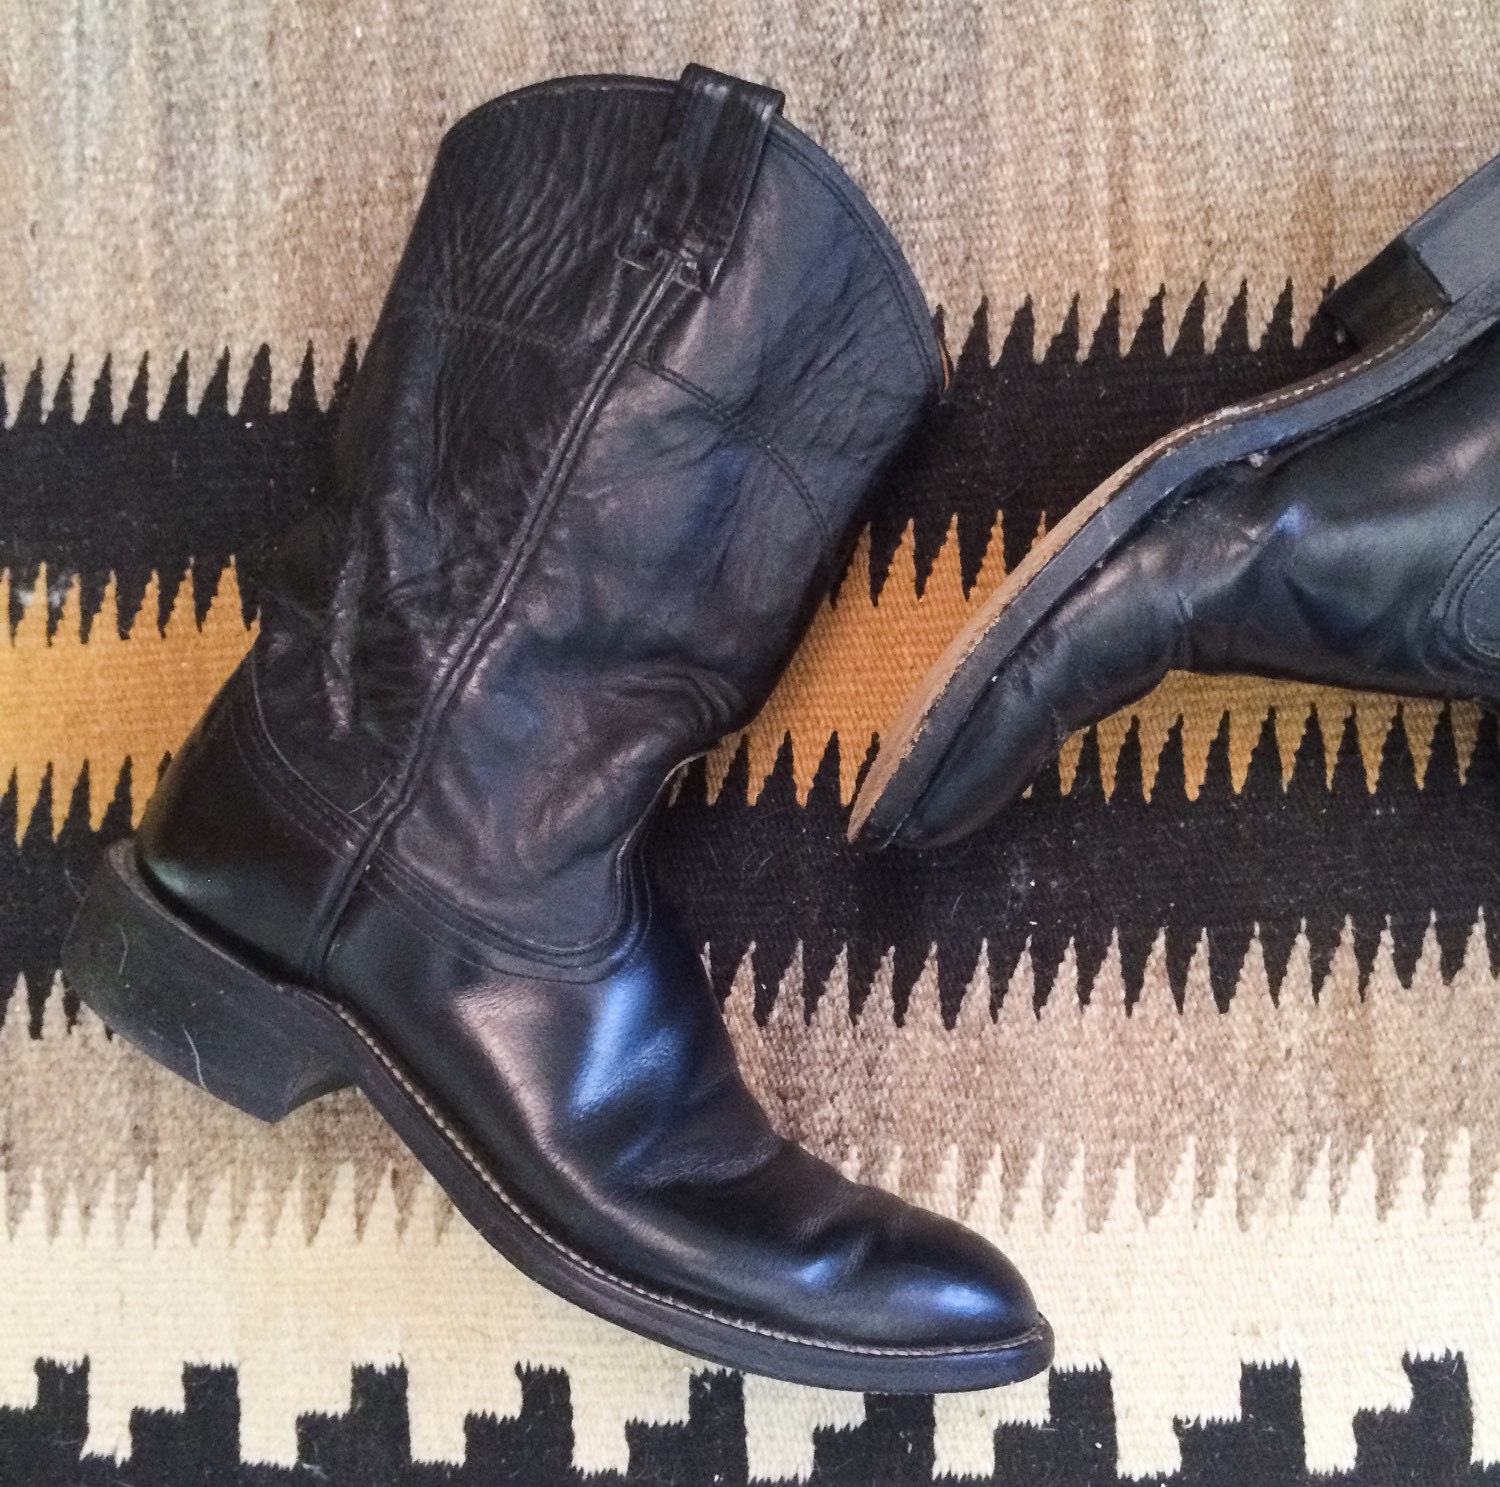 Vintage Nocona Cowboy Boots Men's Size 7 B (Women's Size 8.5) Black ...